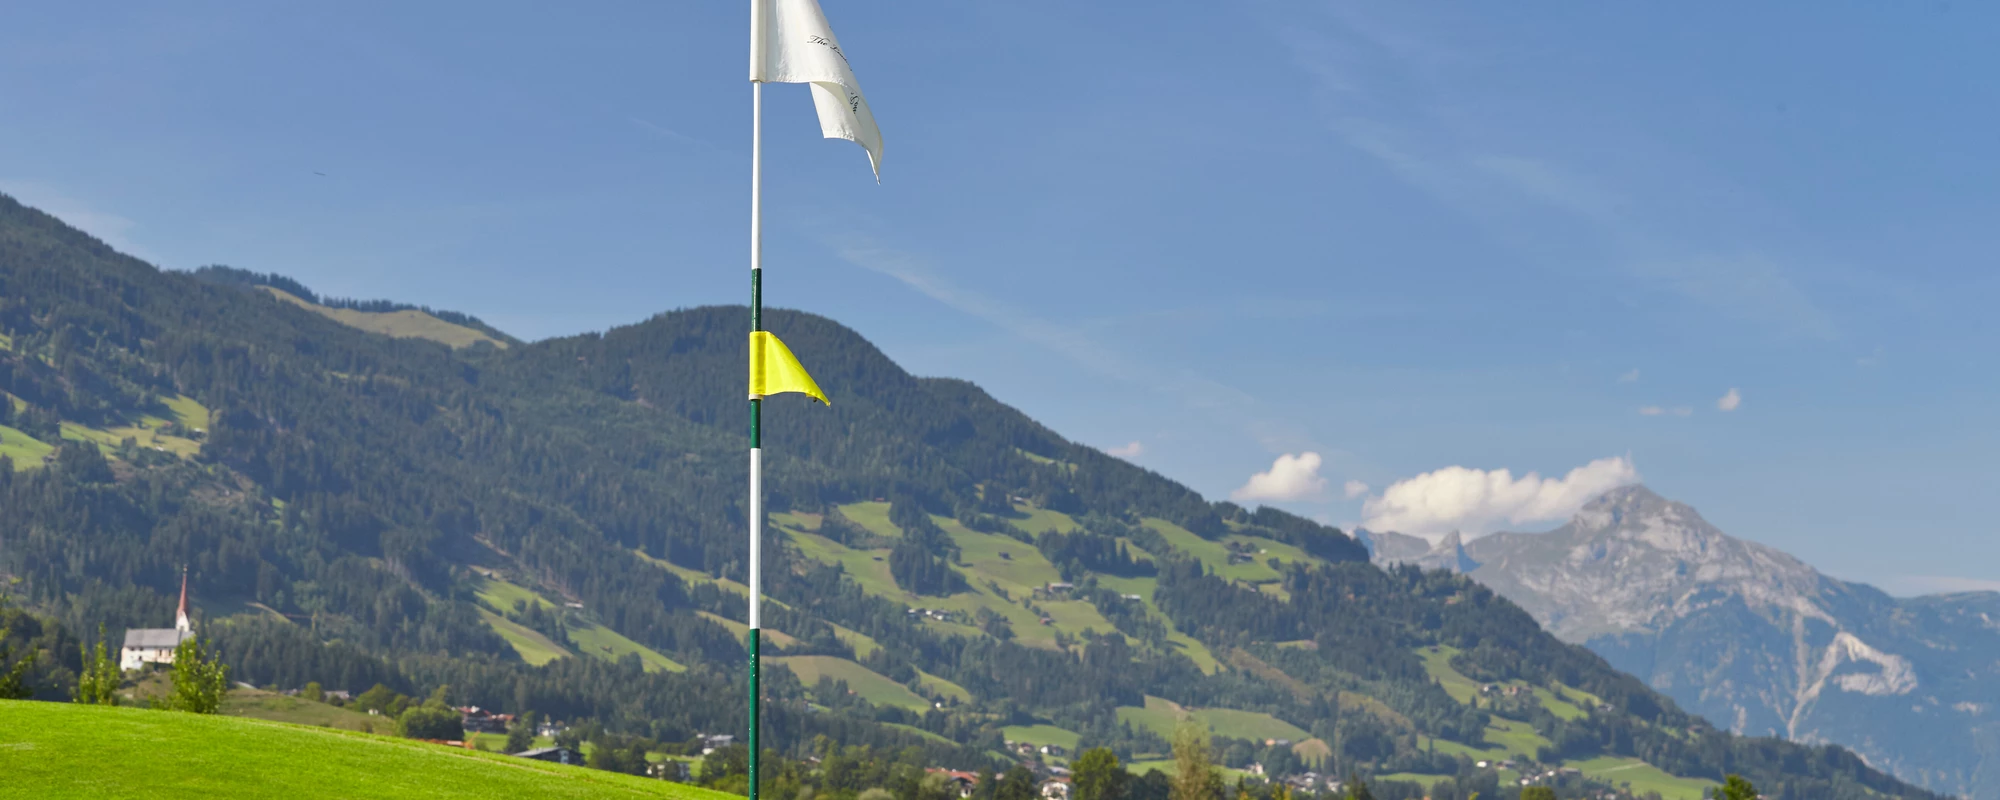 Golfplatz Uderns | © Erste Ferienregion im Zillertal / Paul Severn